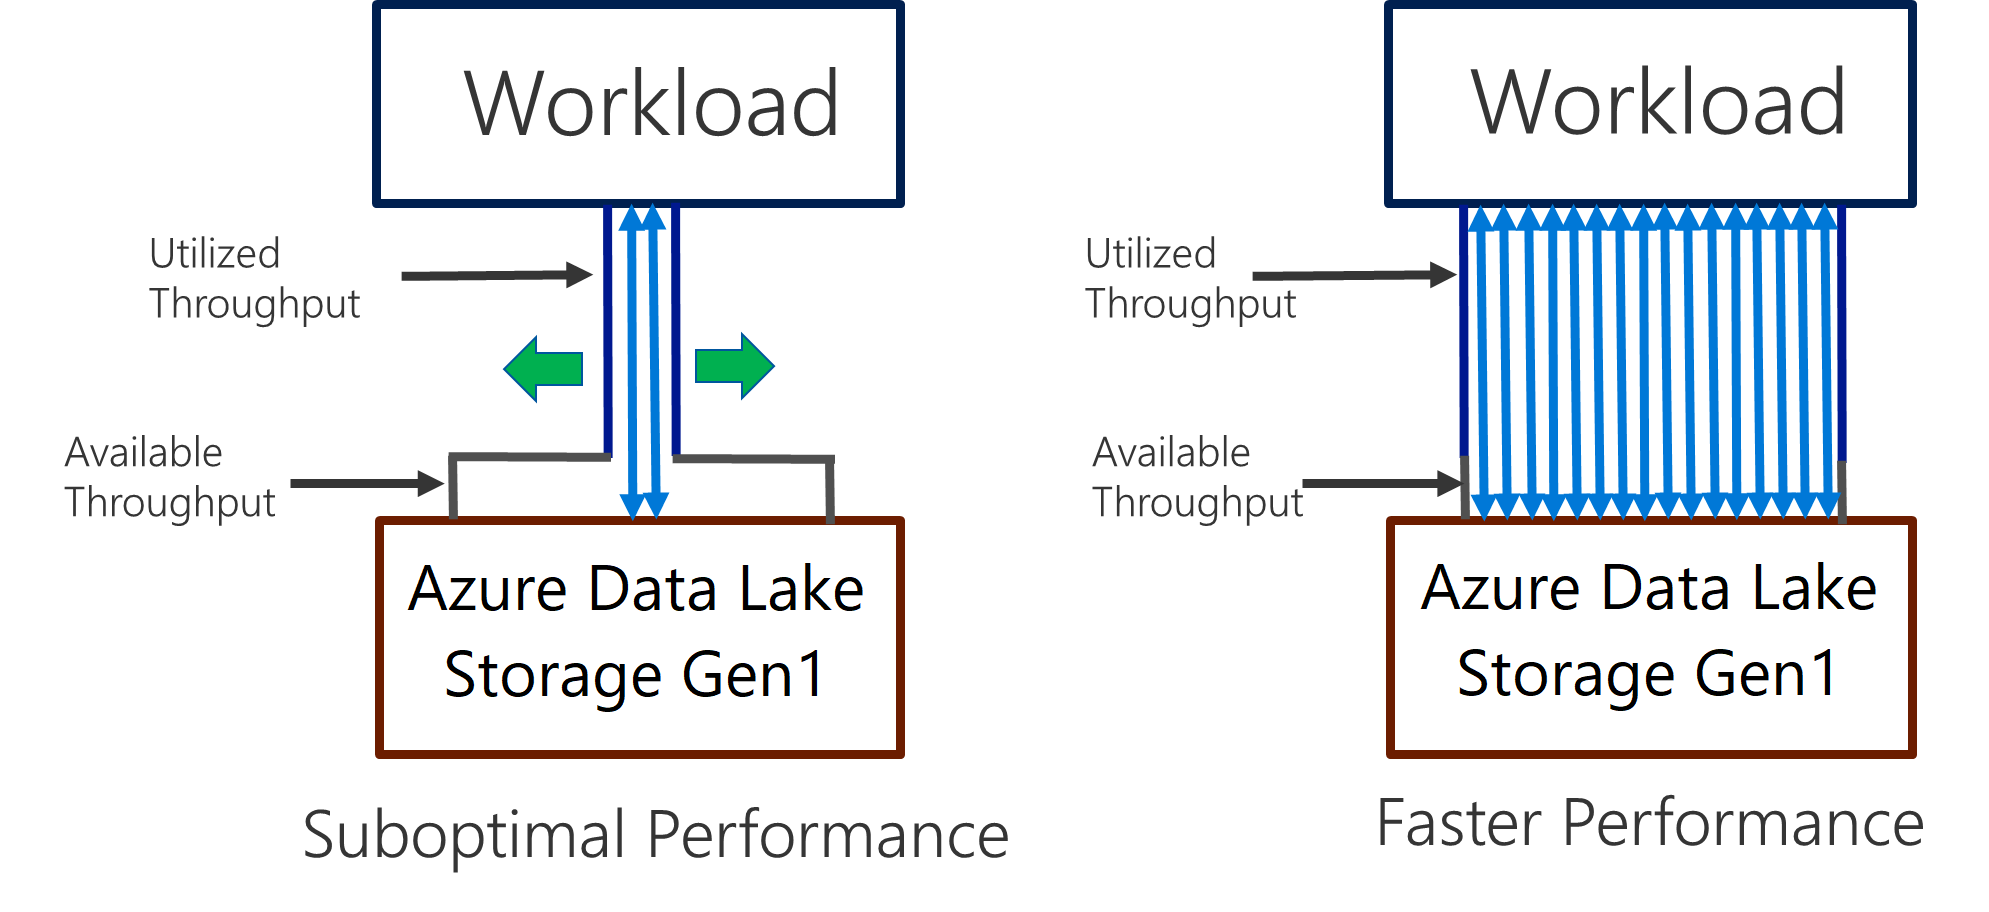 Desempenho do Data Lake Storage Gen1